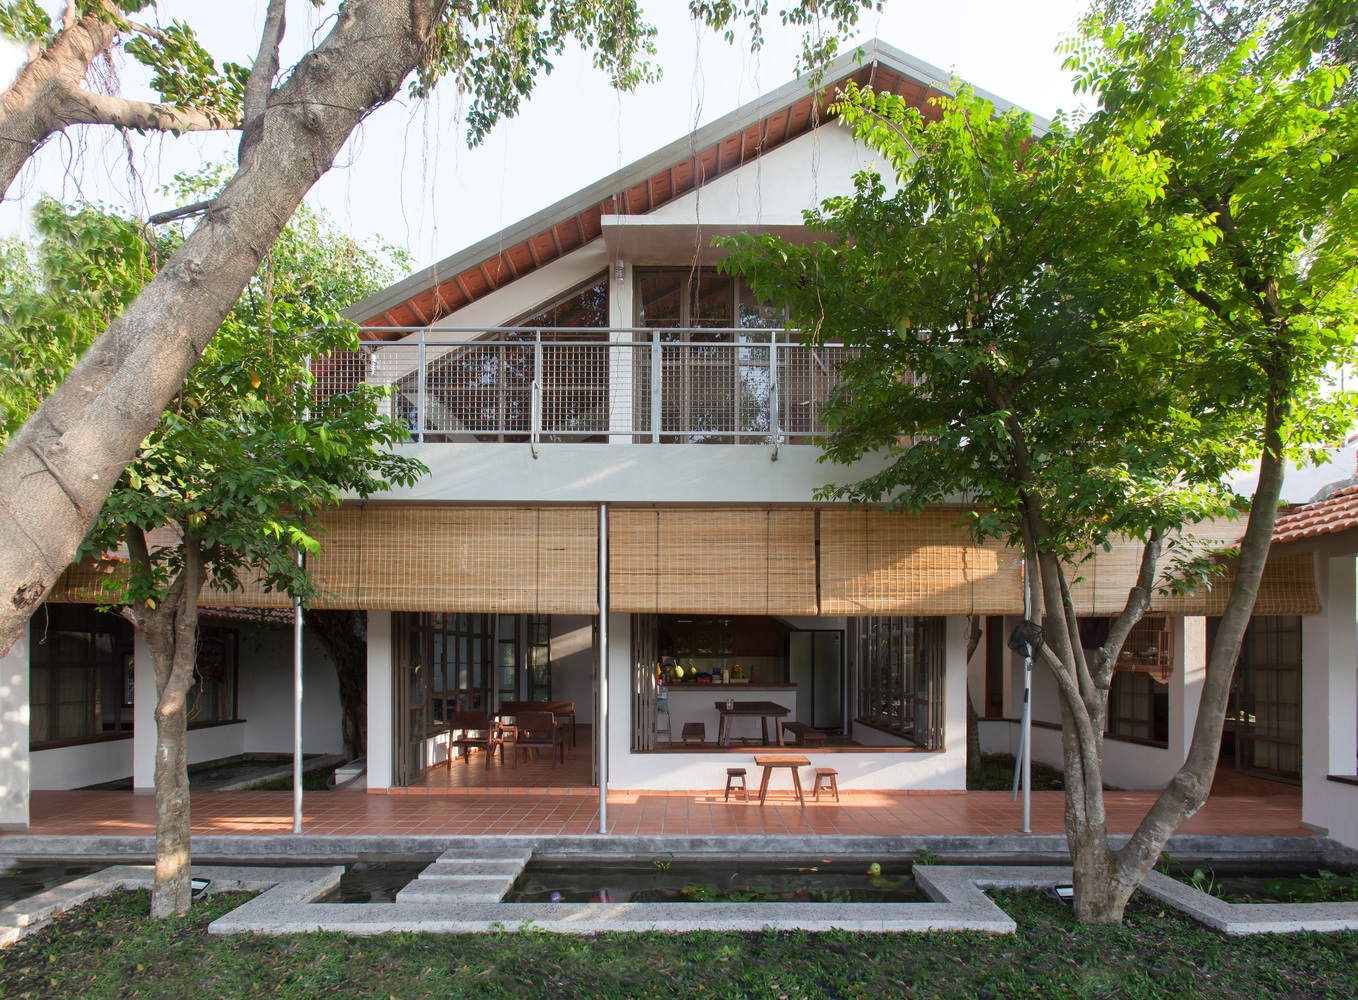 Bình Dương House: Ngôi nhà thoáng đãng với những ô cửa kính nhìn ra cây cối mướt xanh thi vị.